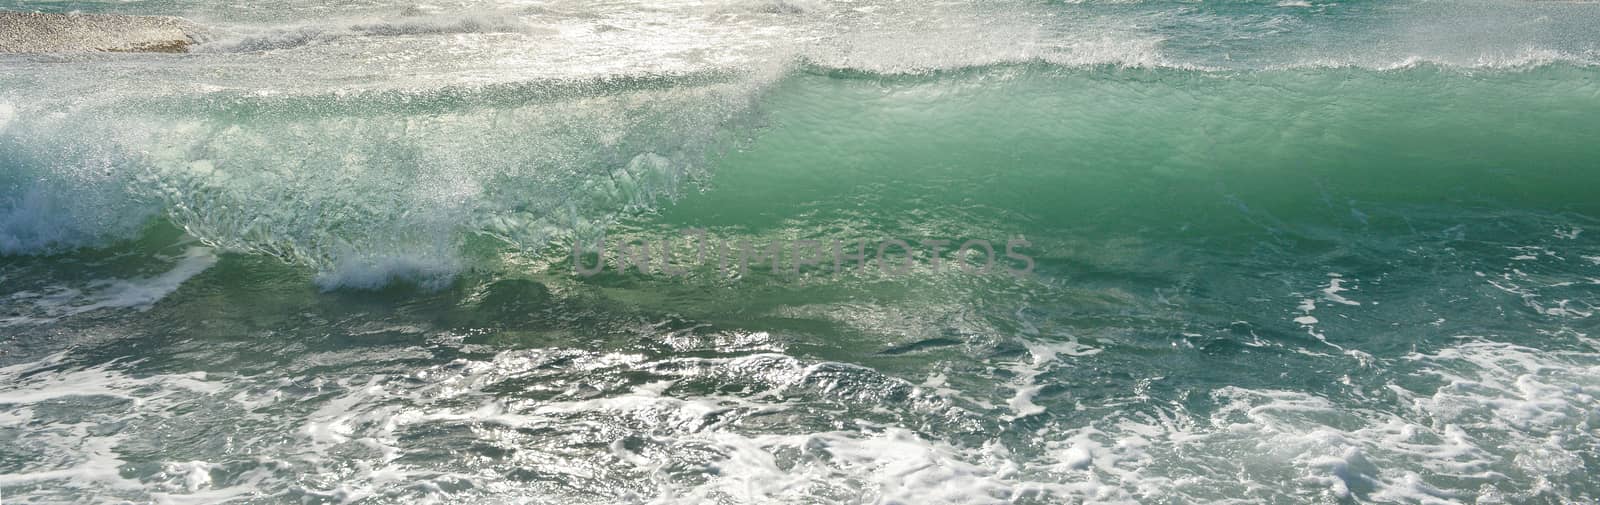 Transparent sea wave